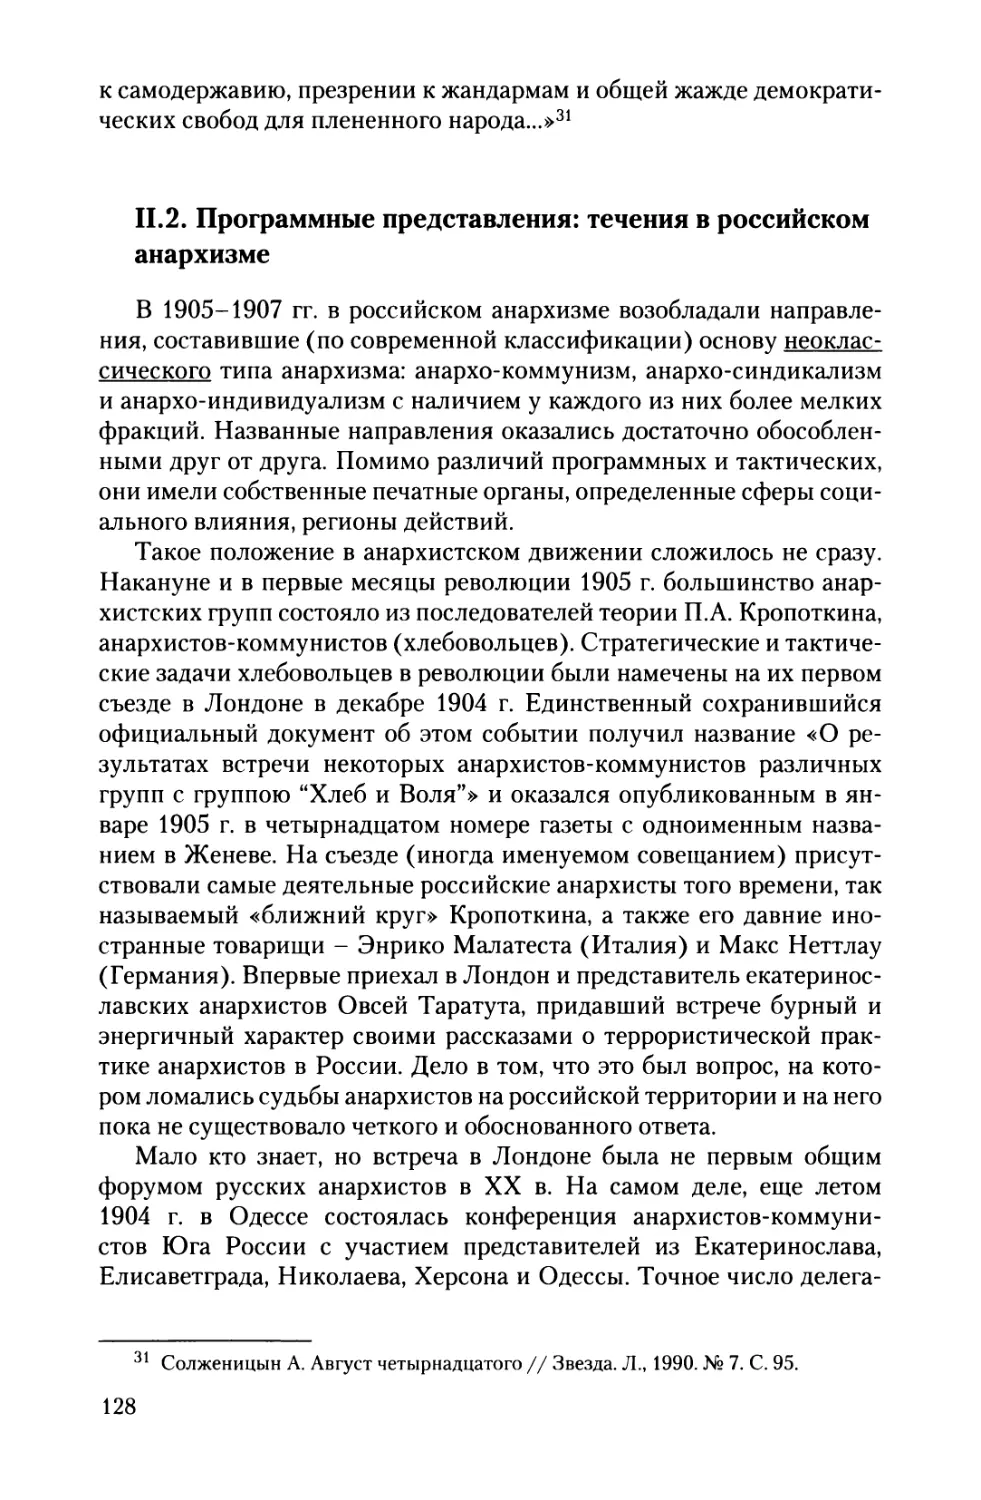 II.2. Программные представления: течения в российском анархизме